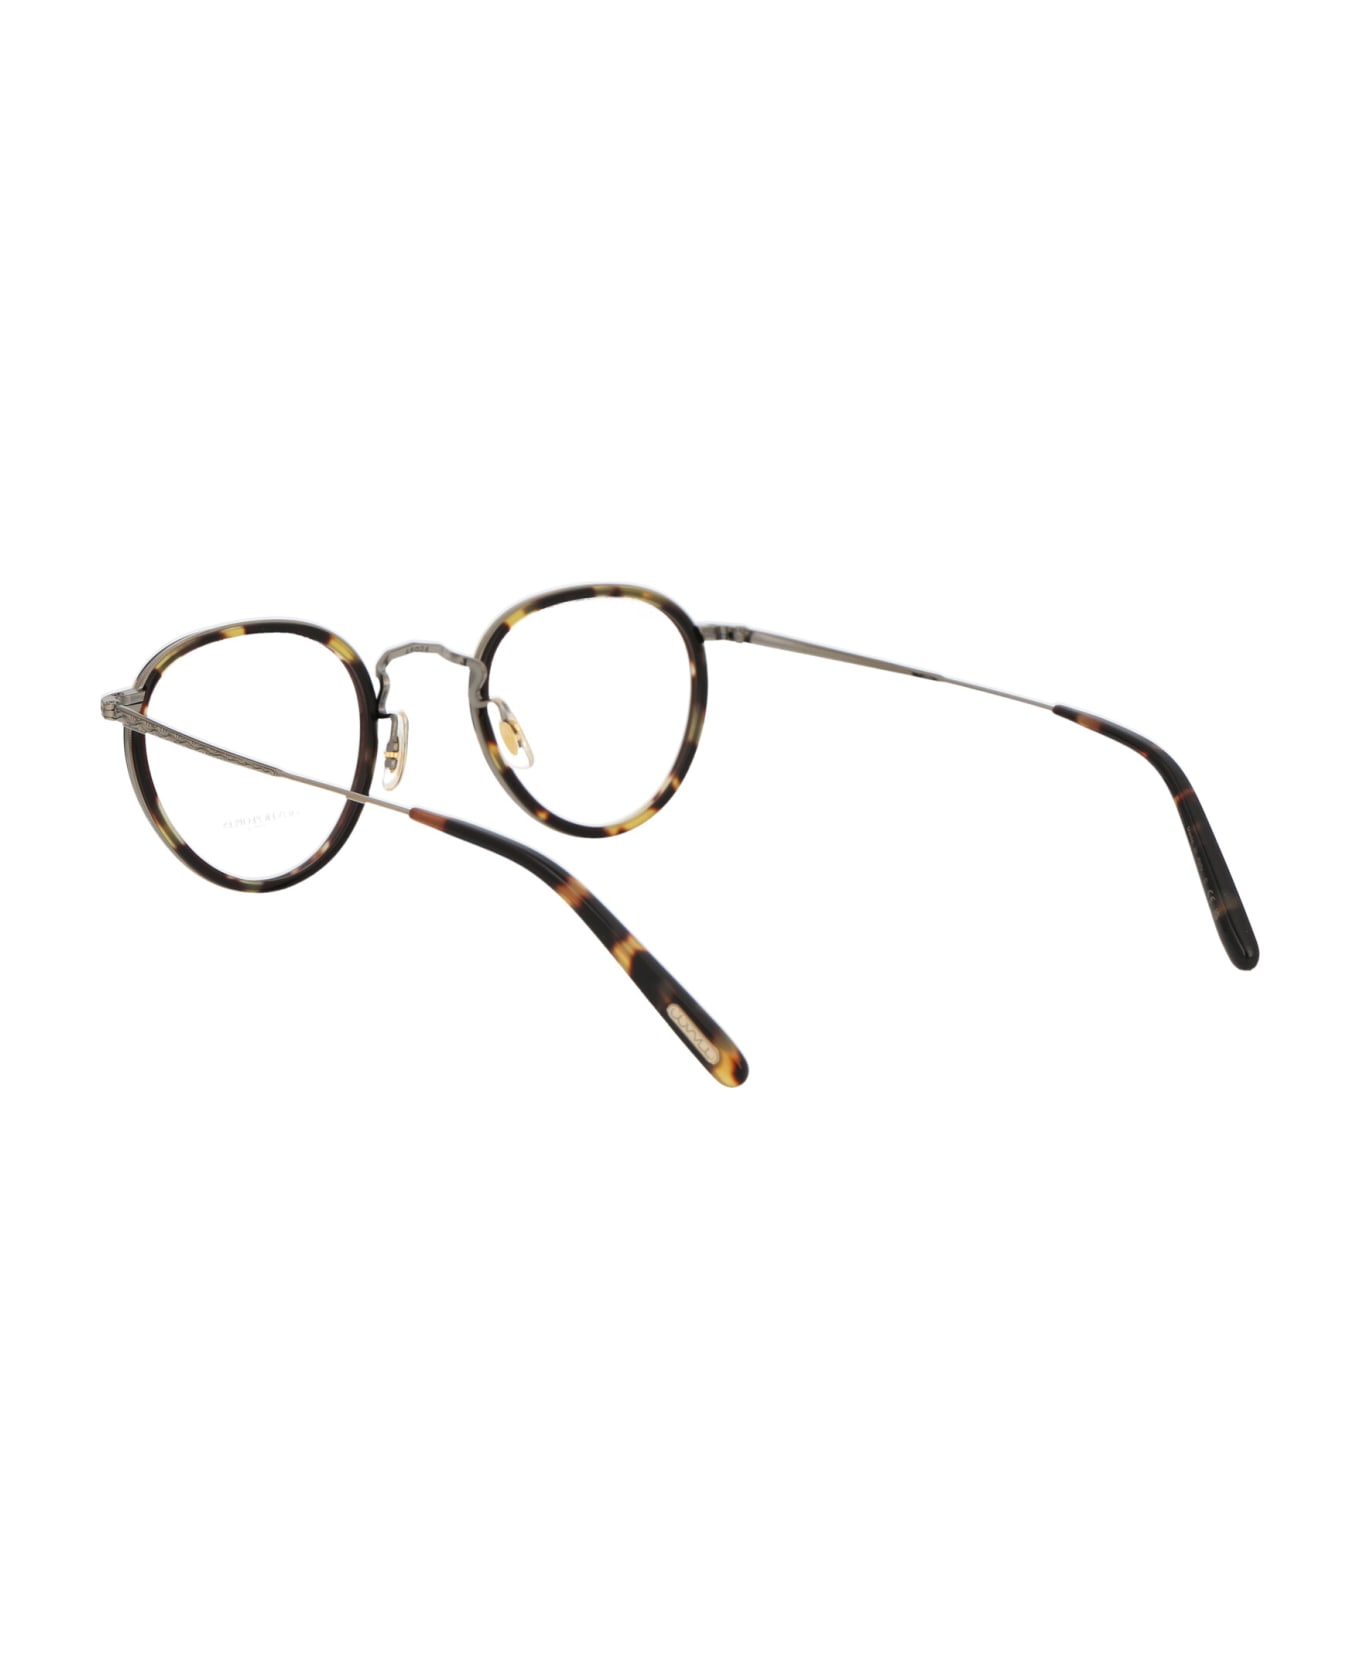 Oliver Peoples Mp-2 Glasses - 5039 Vintage DTB-Antique Gold